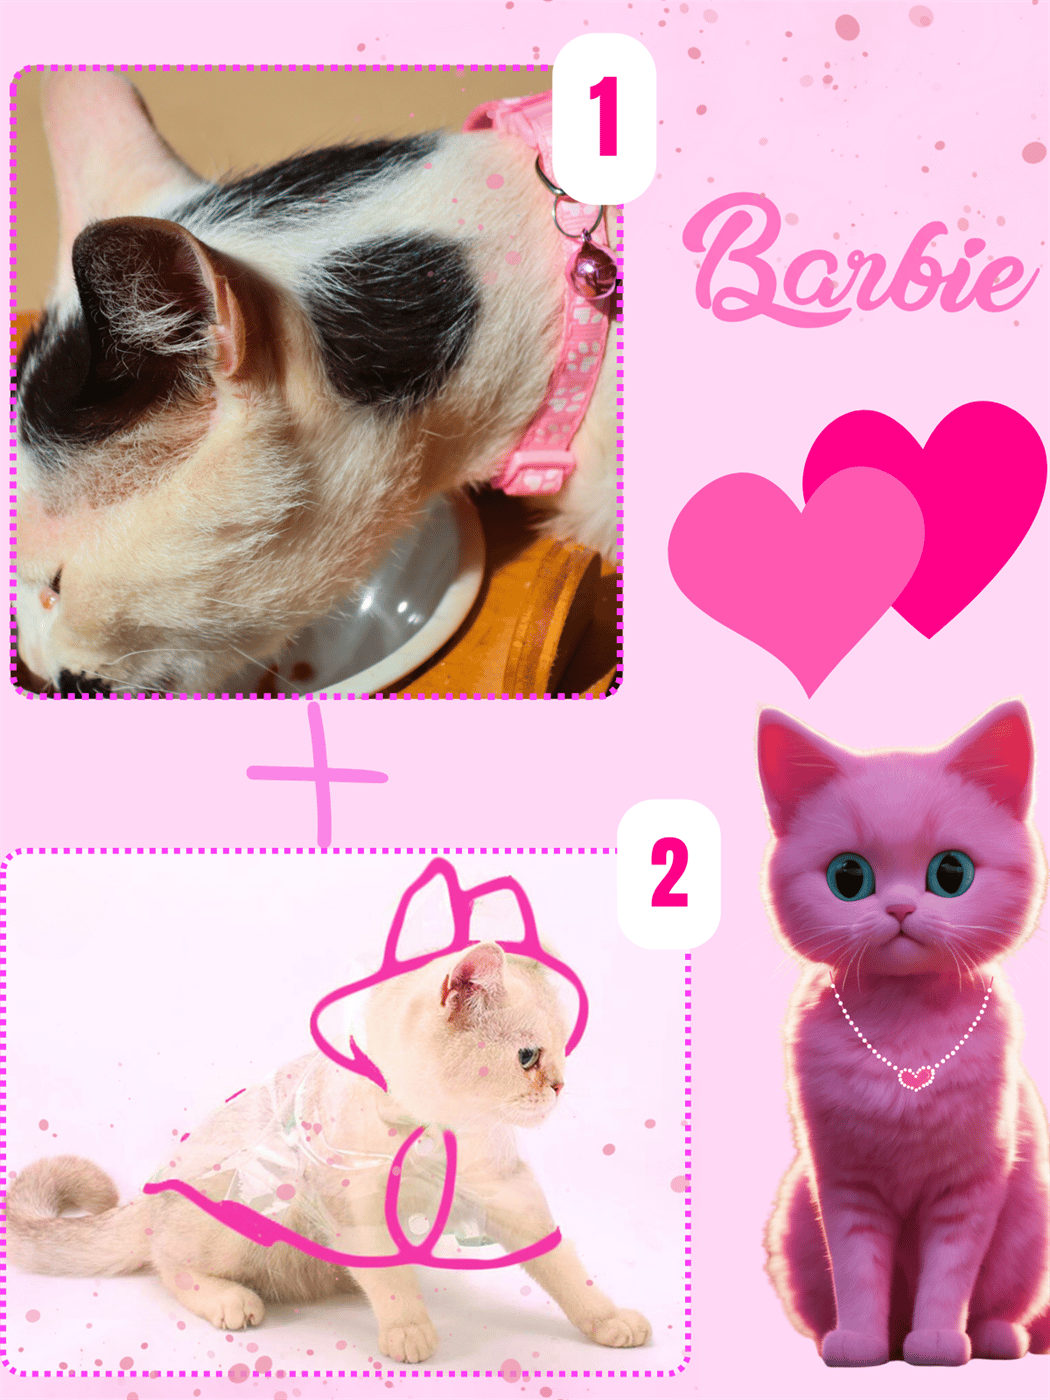 Kedi kıyafeti, kedi yağmurluk,Kedi elbisesi M kedi tasması, kedi künyesi,2  li set Barbie serisi